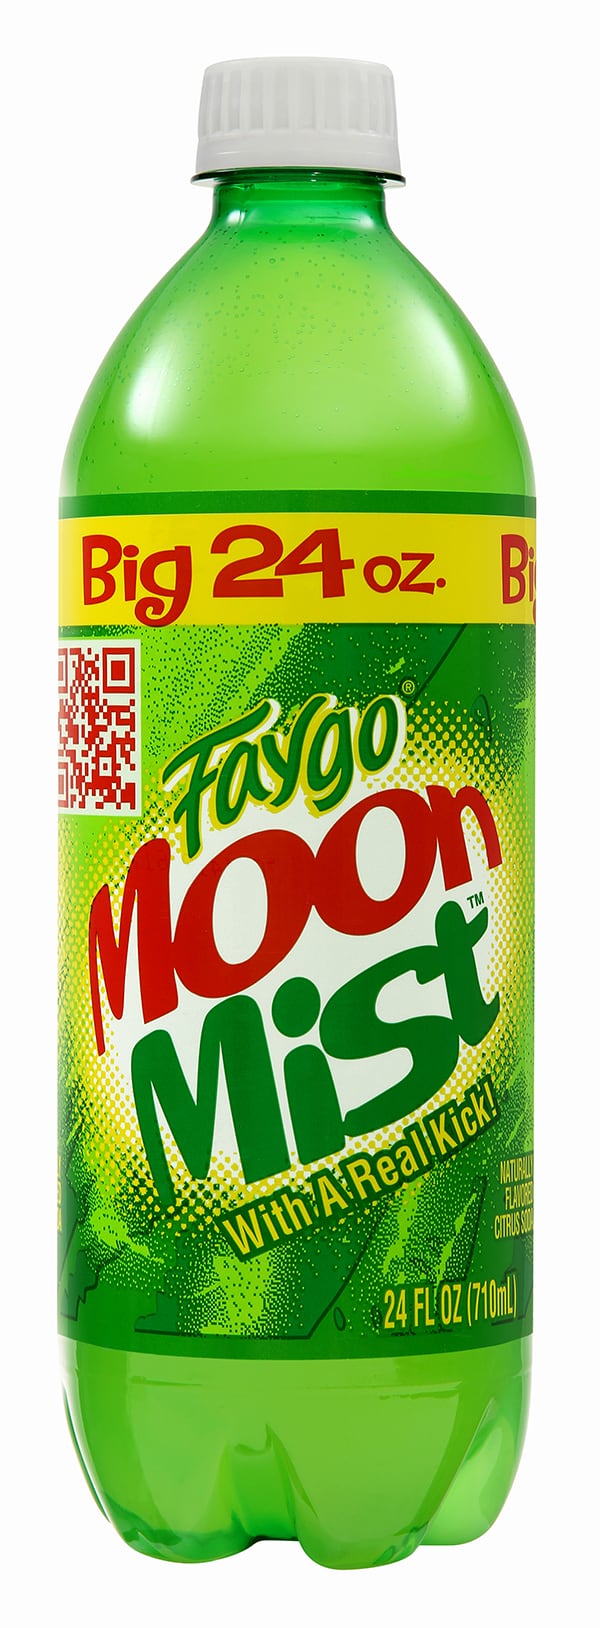 Faygo Moon Mist